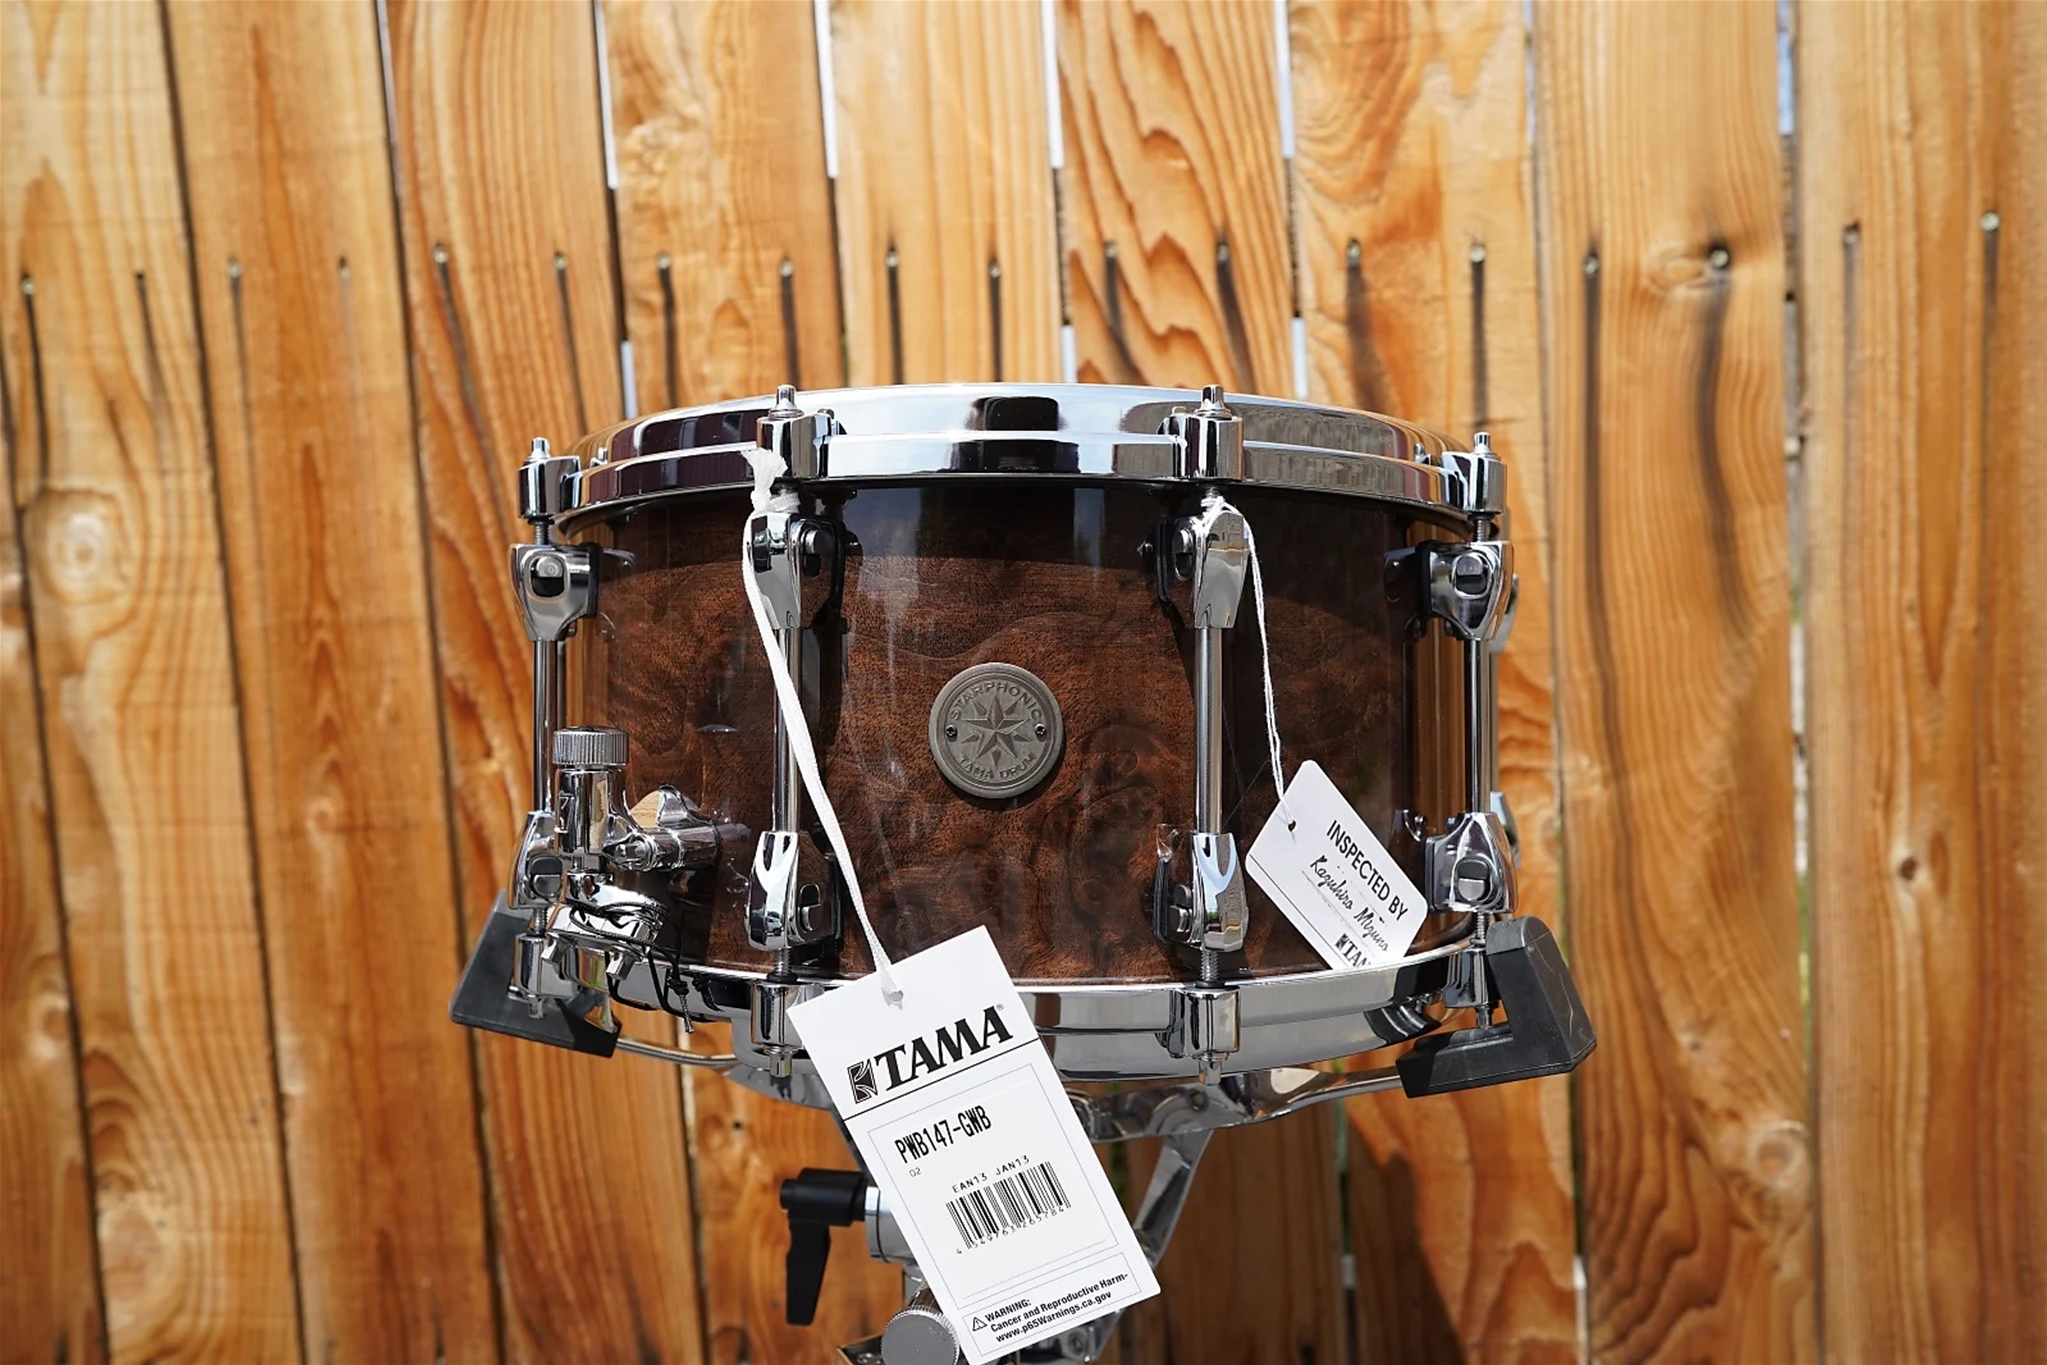 Tama Starphonic Walnut Hi-Gloss Walnut Burl 7 x 14" Snare Drum (Made in Japan)